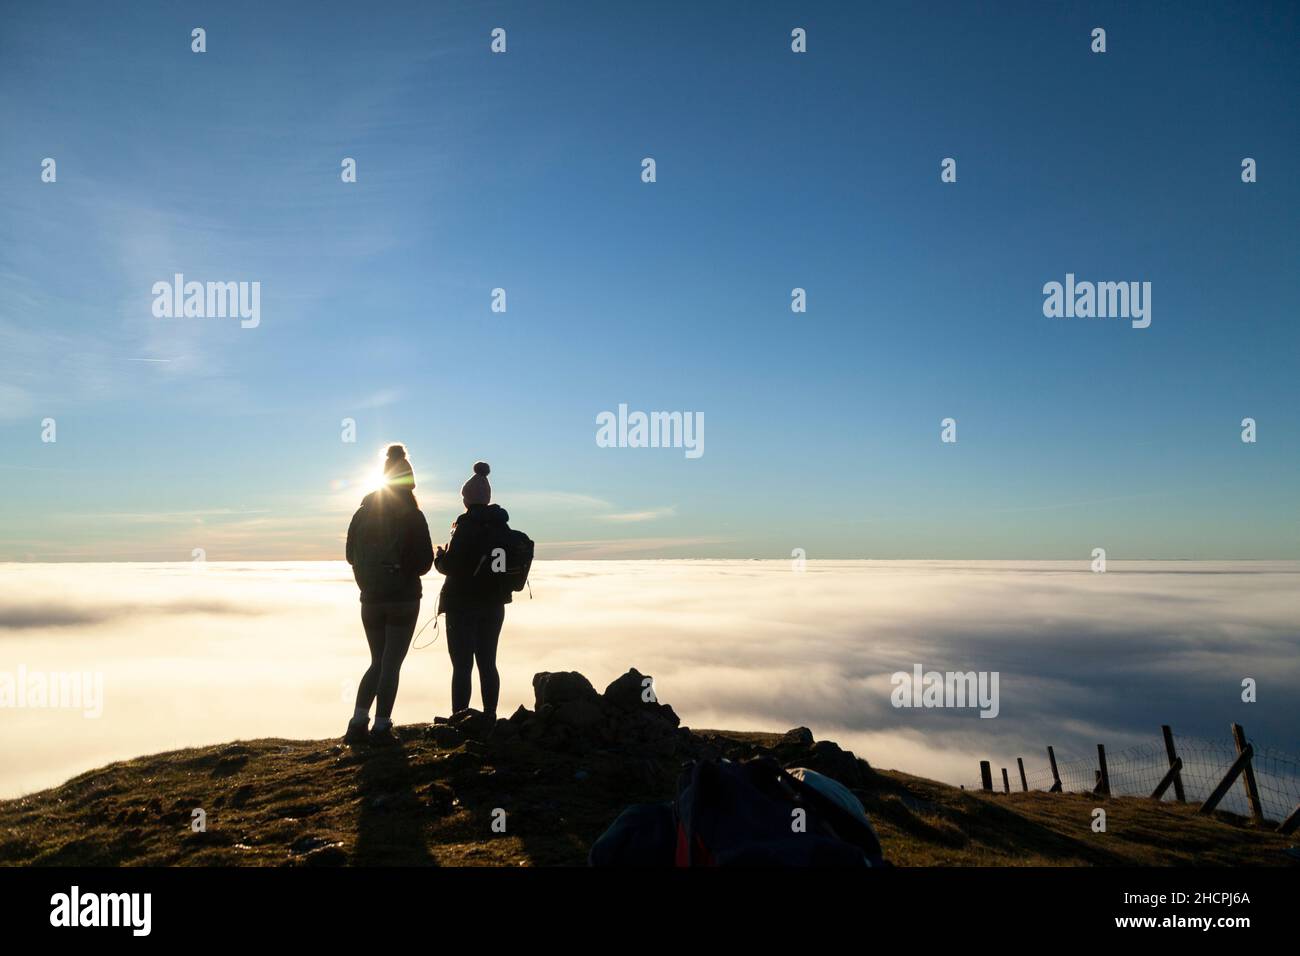 Deux femmes ont silhoueté contre une mer de nuages au sommet d'une colline. Banque D'Images